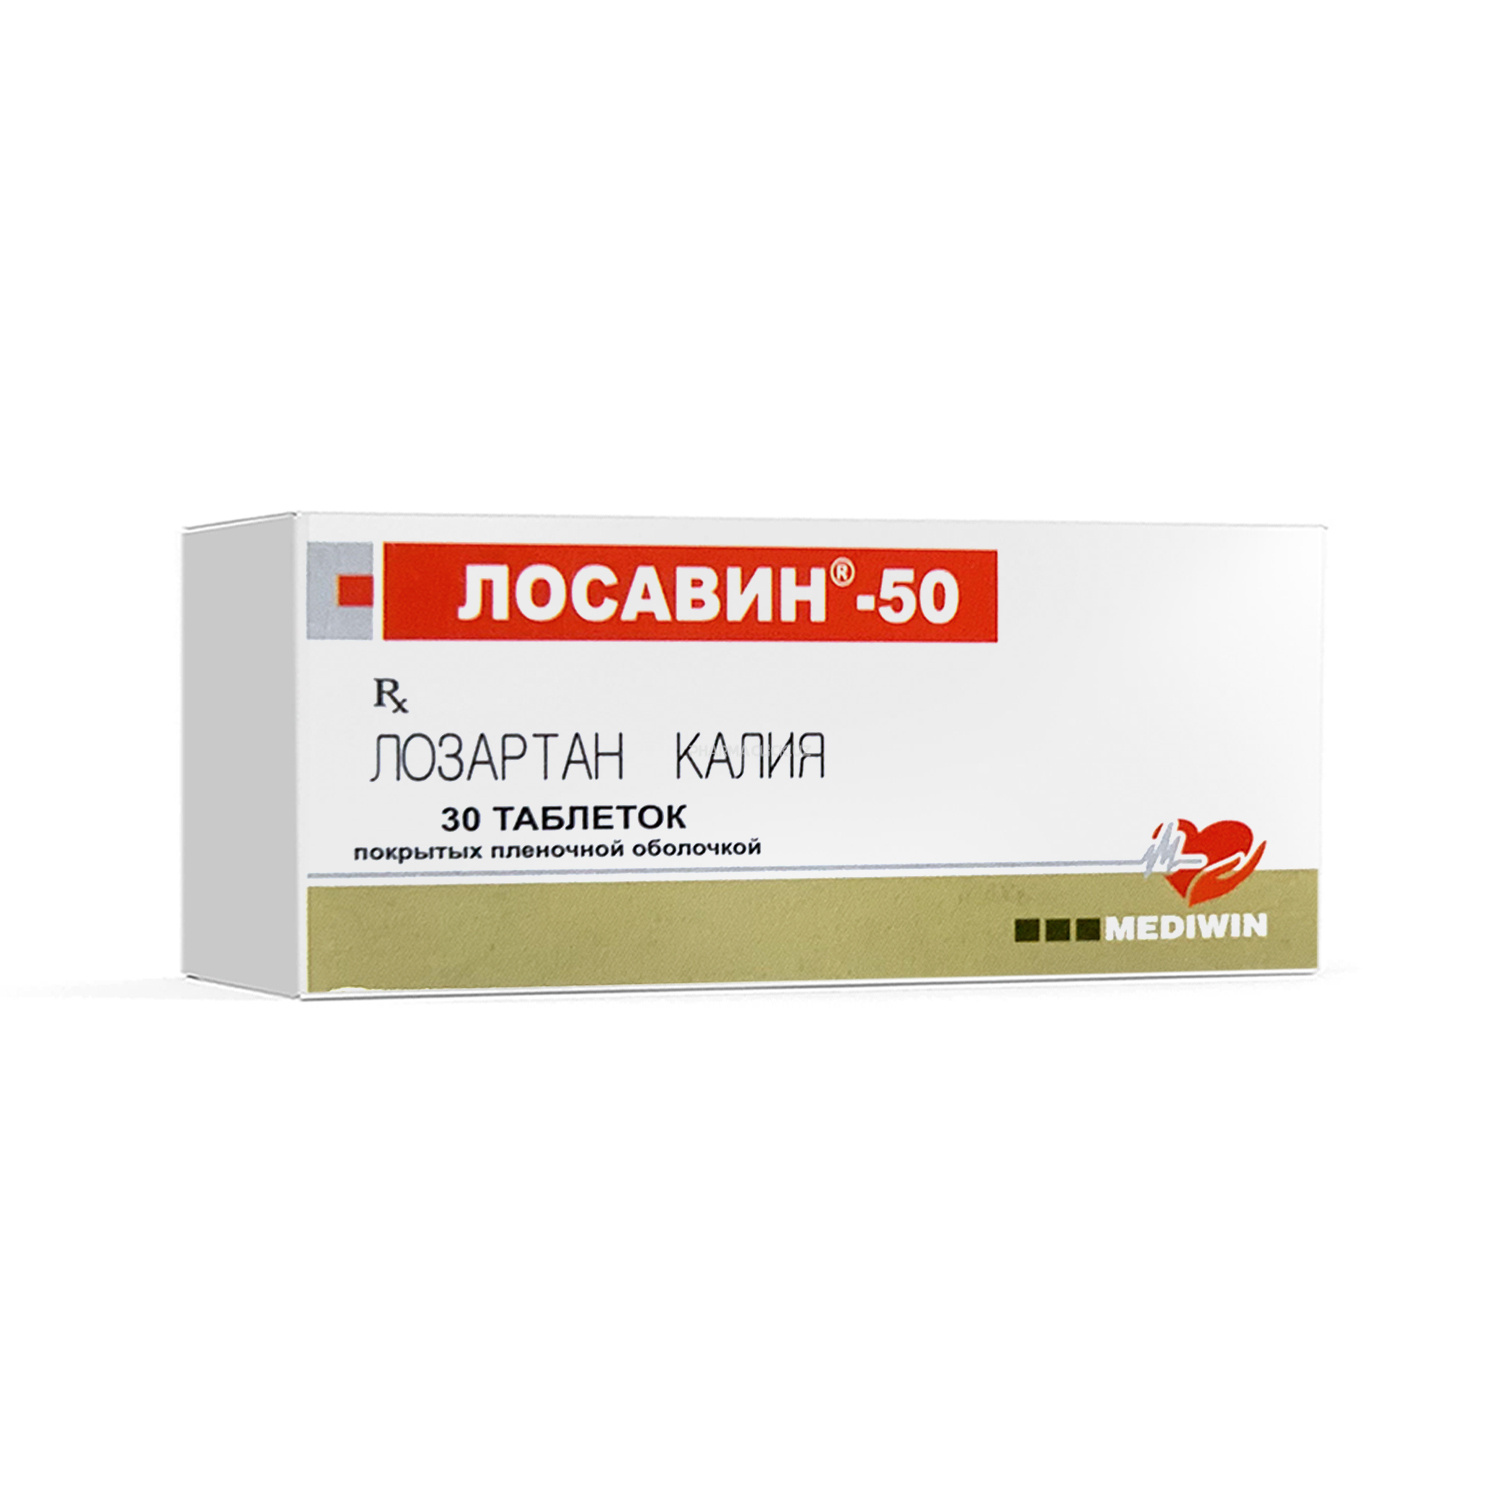 Losavin - 50 tab. qobiq bilan qoplangan 50 mg №30